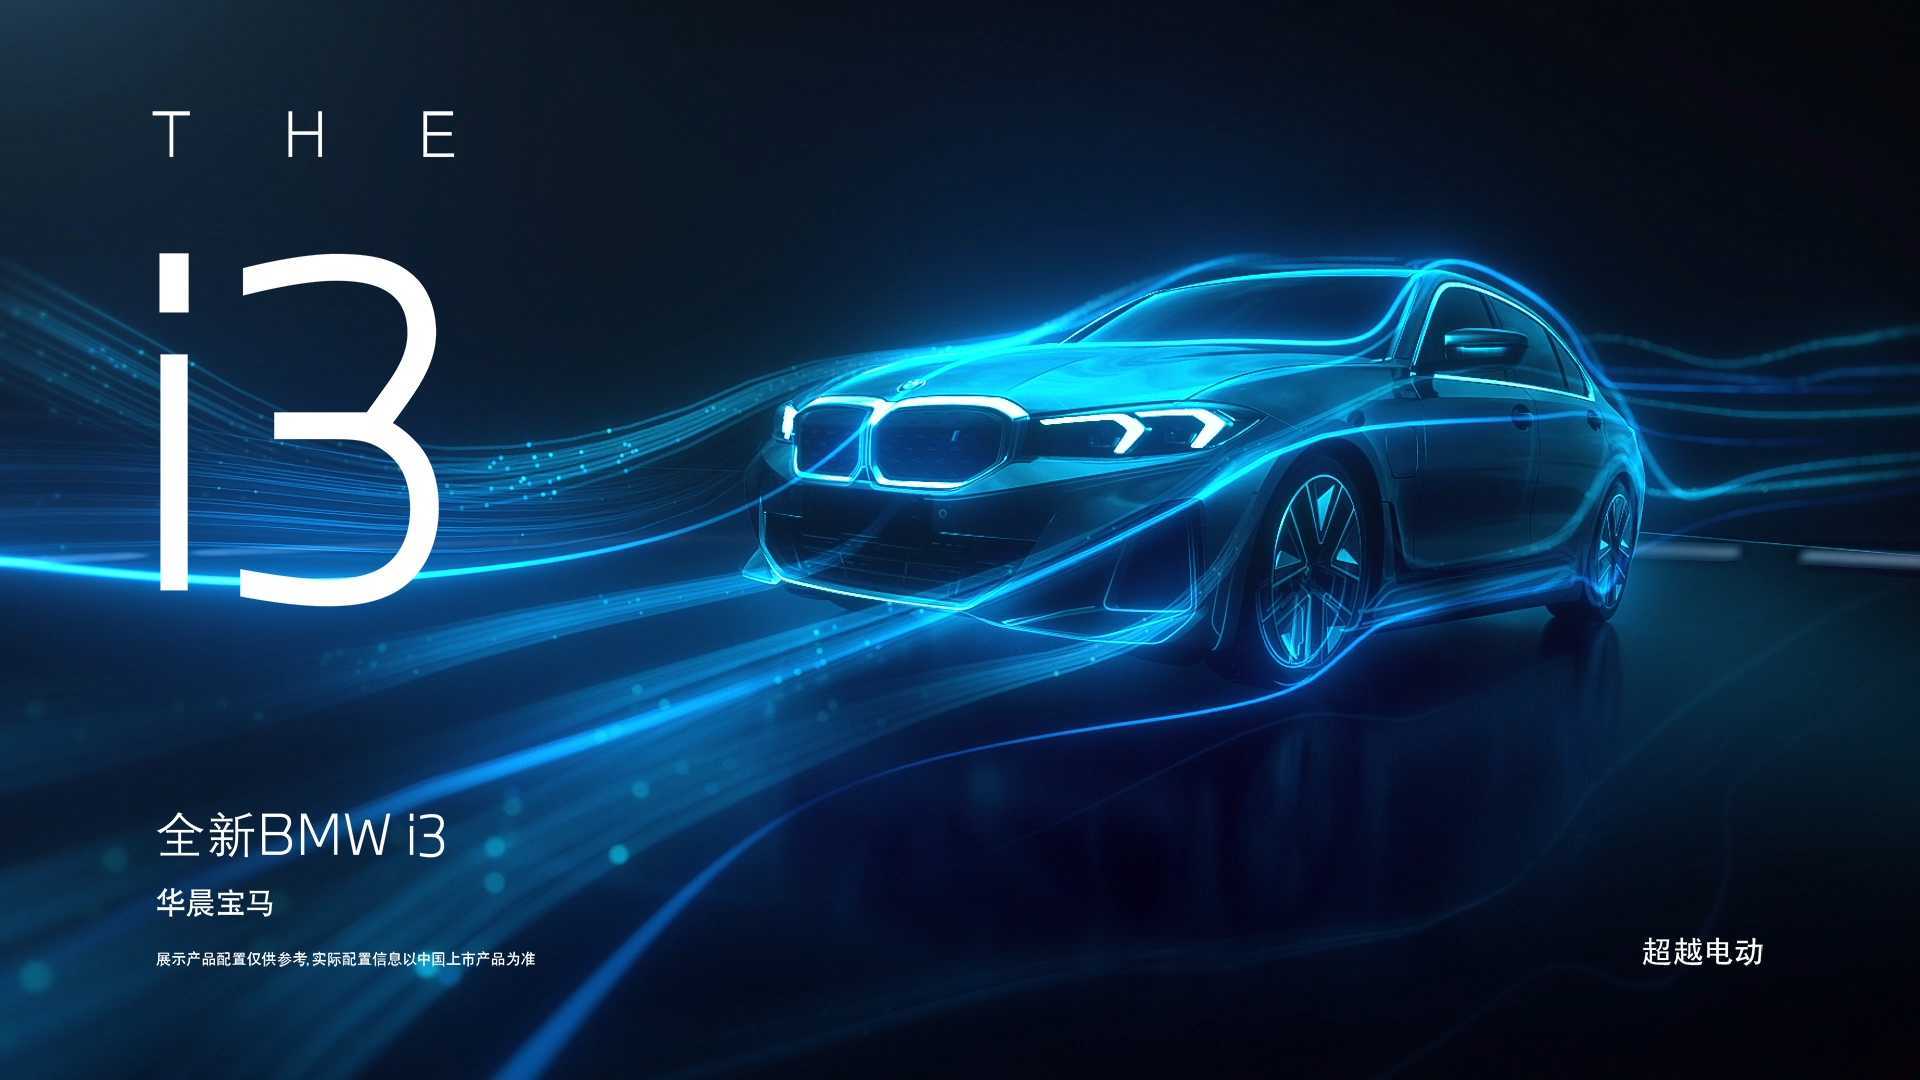 #全新BMWi3，精彩揭晓#以3系进化电动